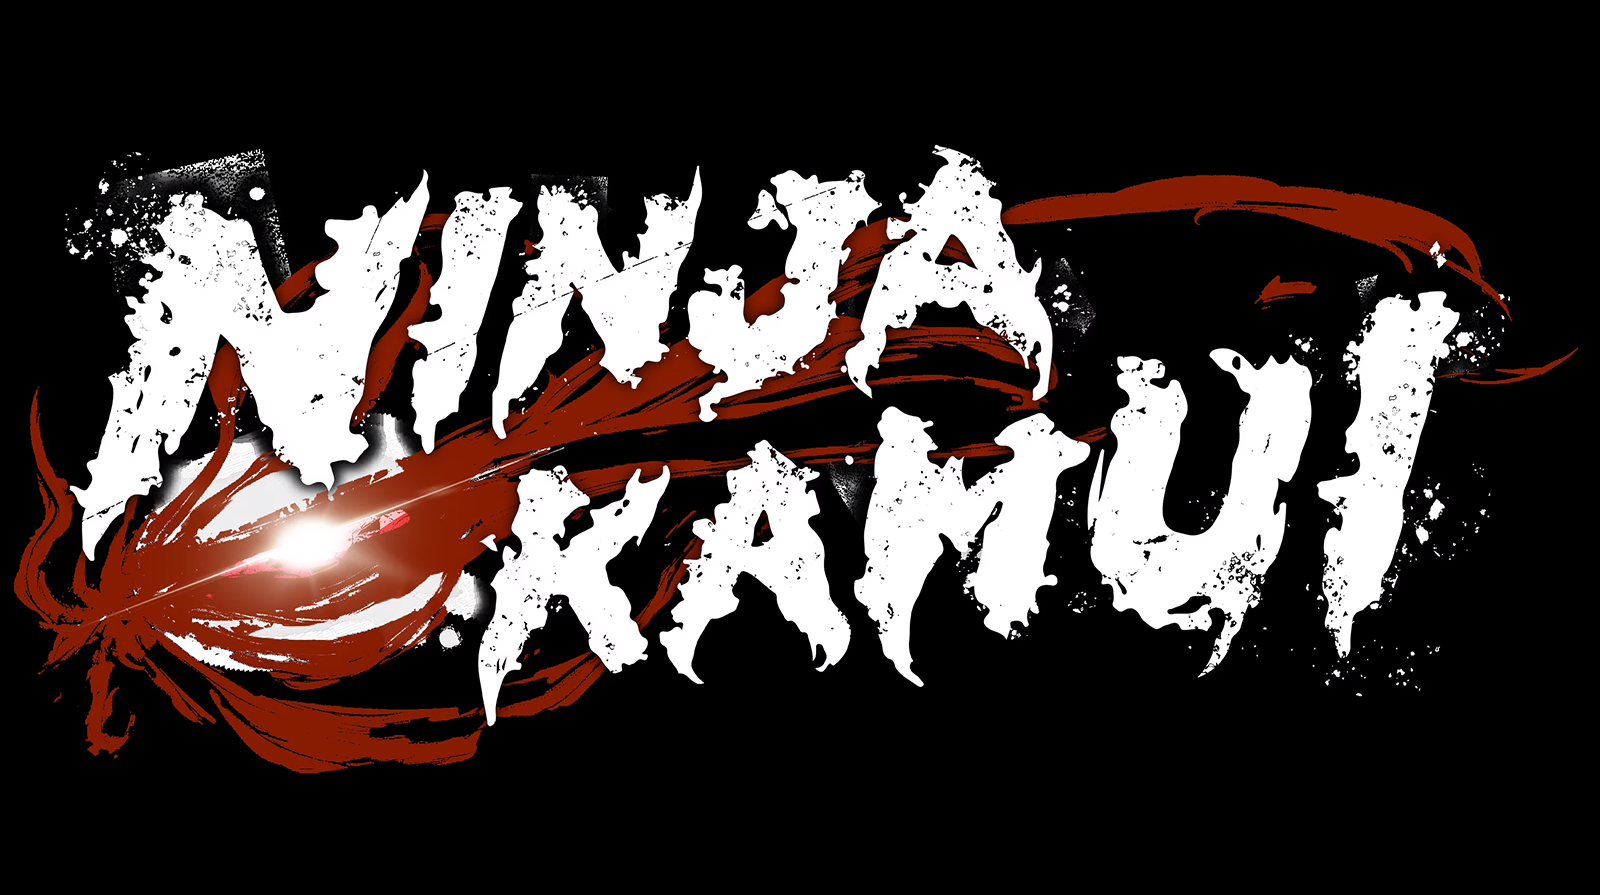 Ninja Kamui: Saison 1 Episode 13